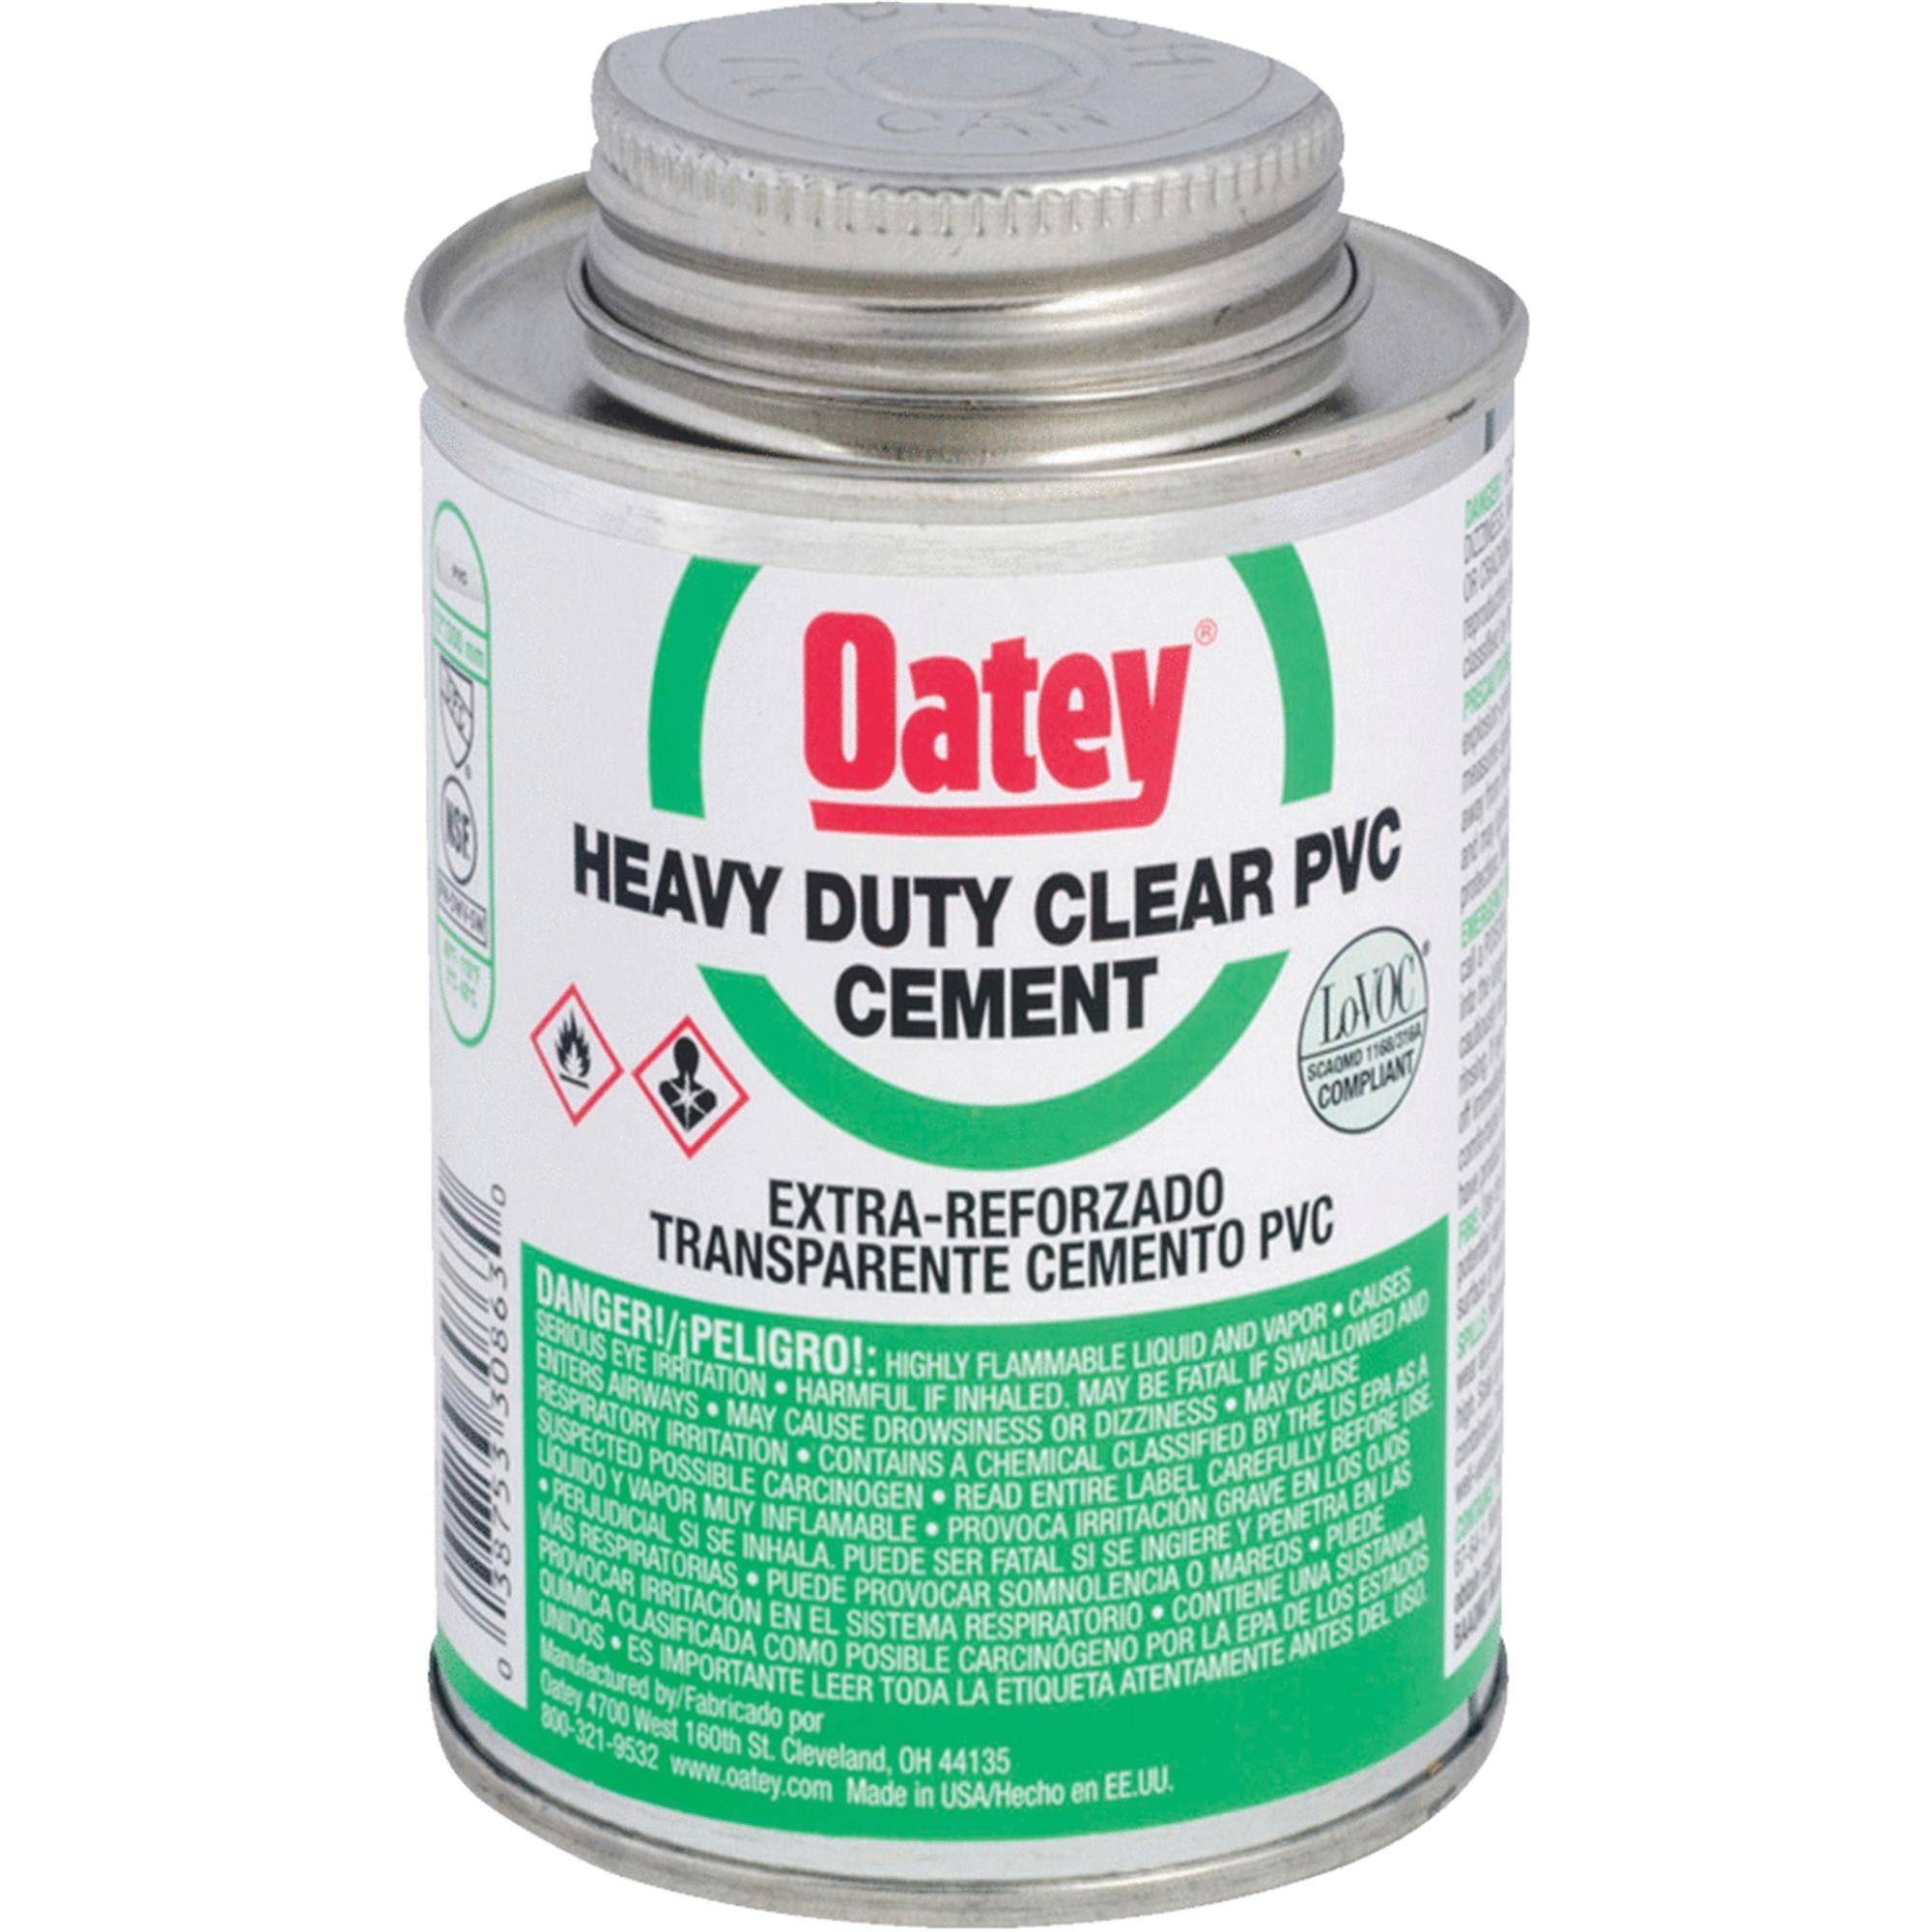 Oatey 30850 Heavy-Duty PVC Cement - Clear